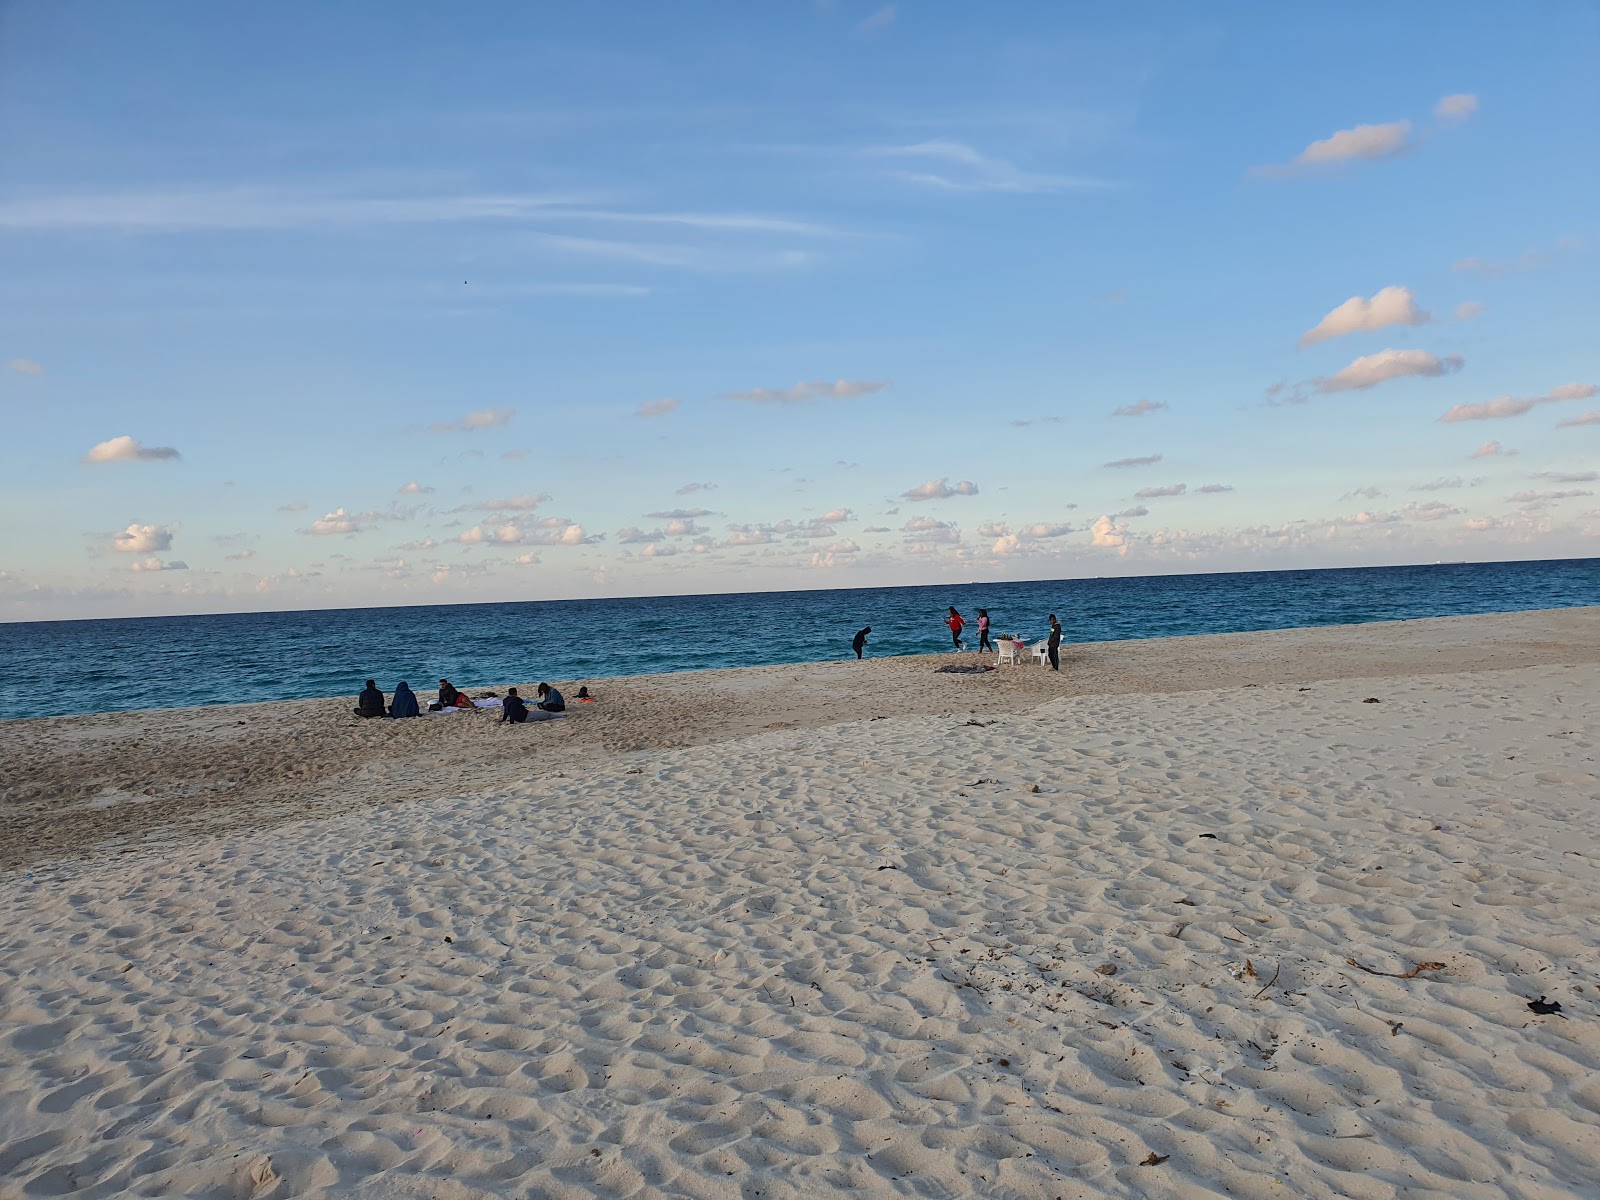 Fotografie cu El-Shorouk Beach - locul popular printre cunoscătorii de relaxare